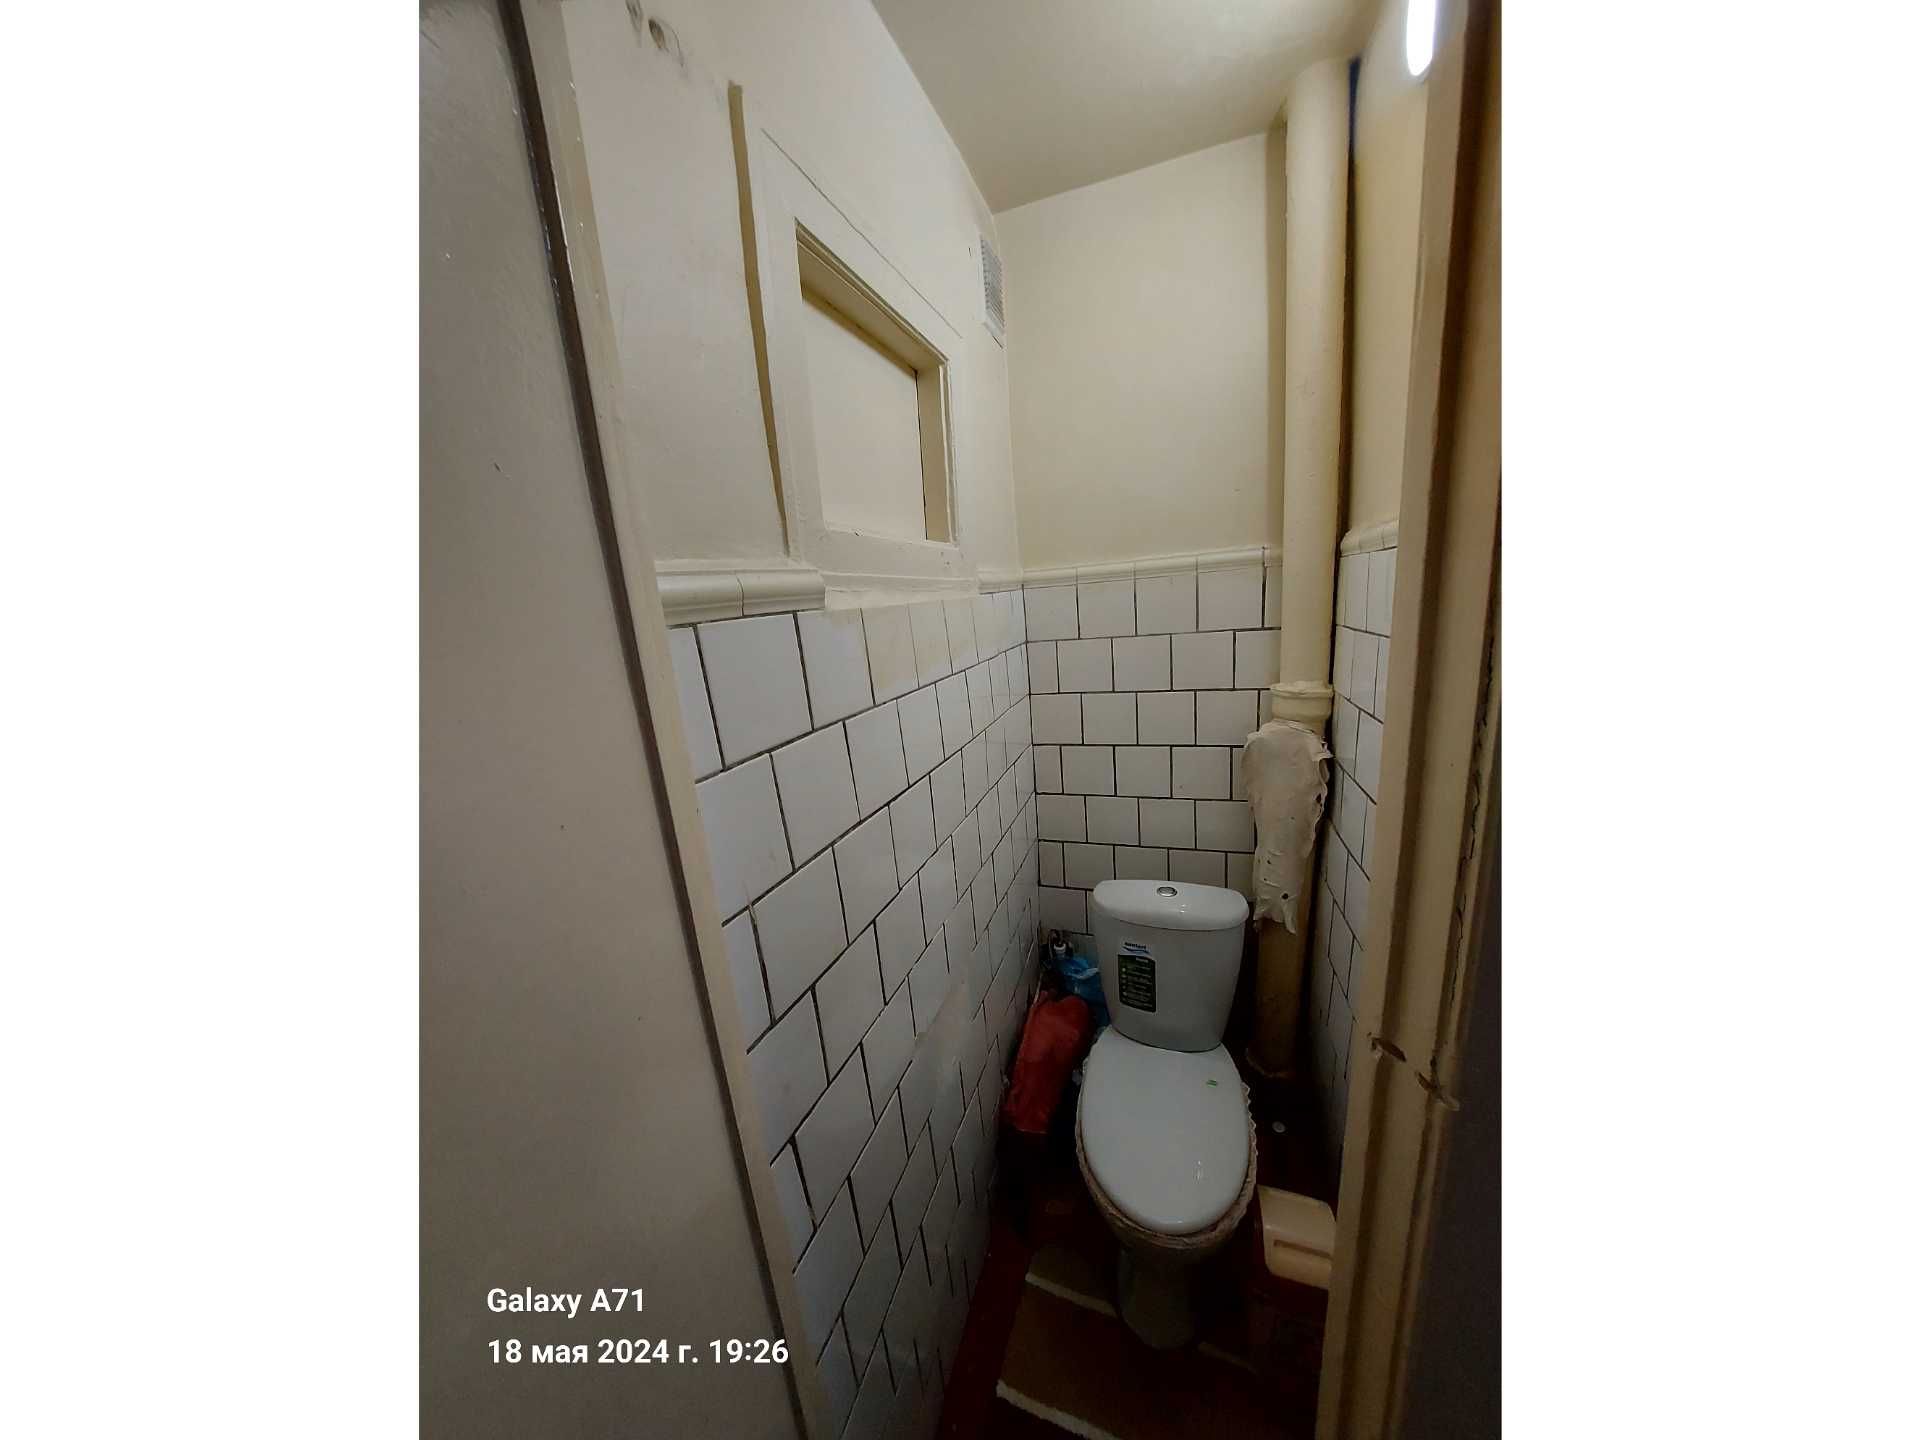 (К129861) Продается 3-х комнатная квартира в Учтепинском районе.